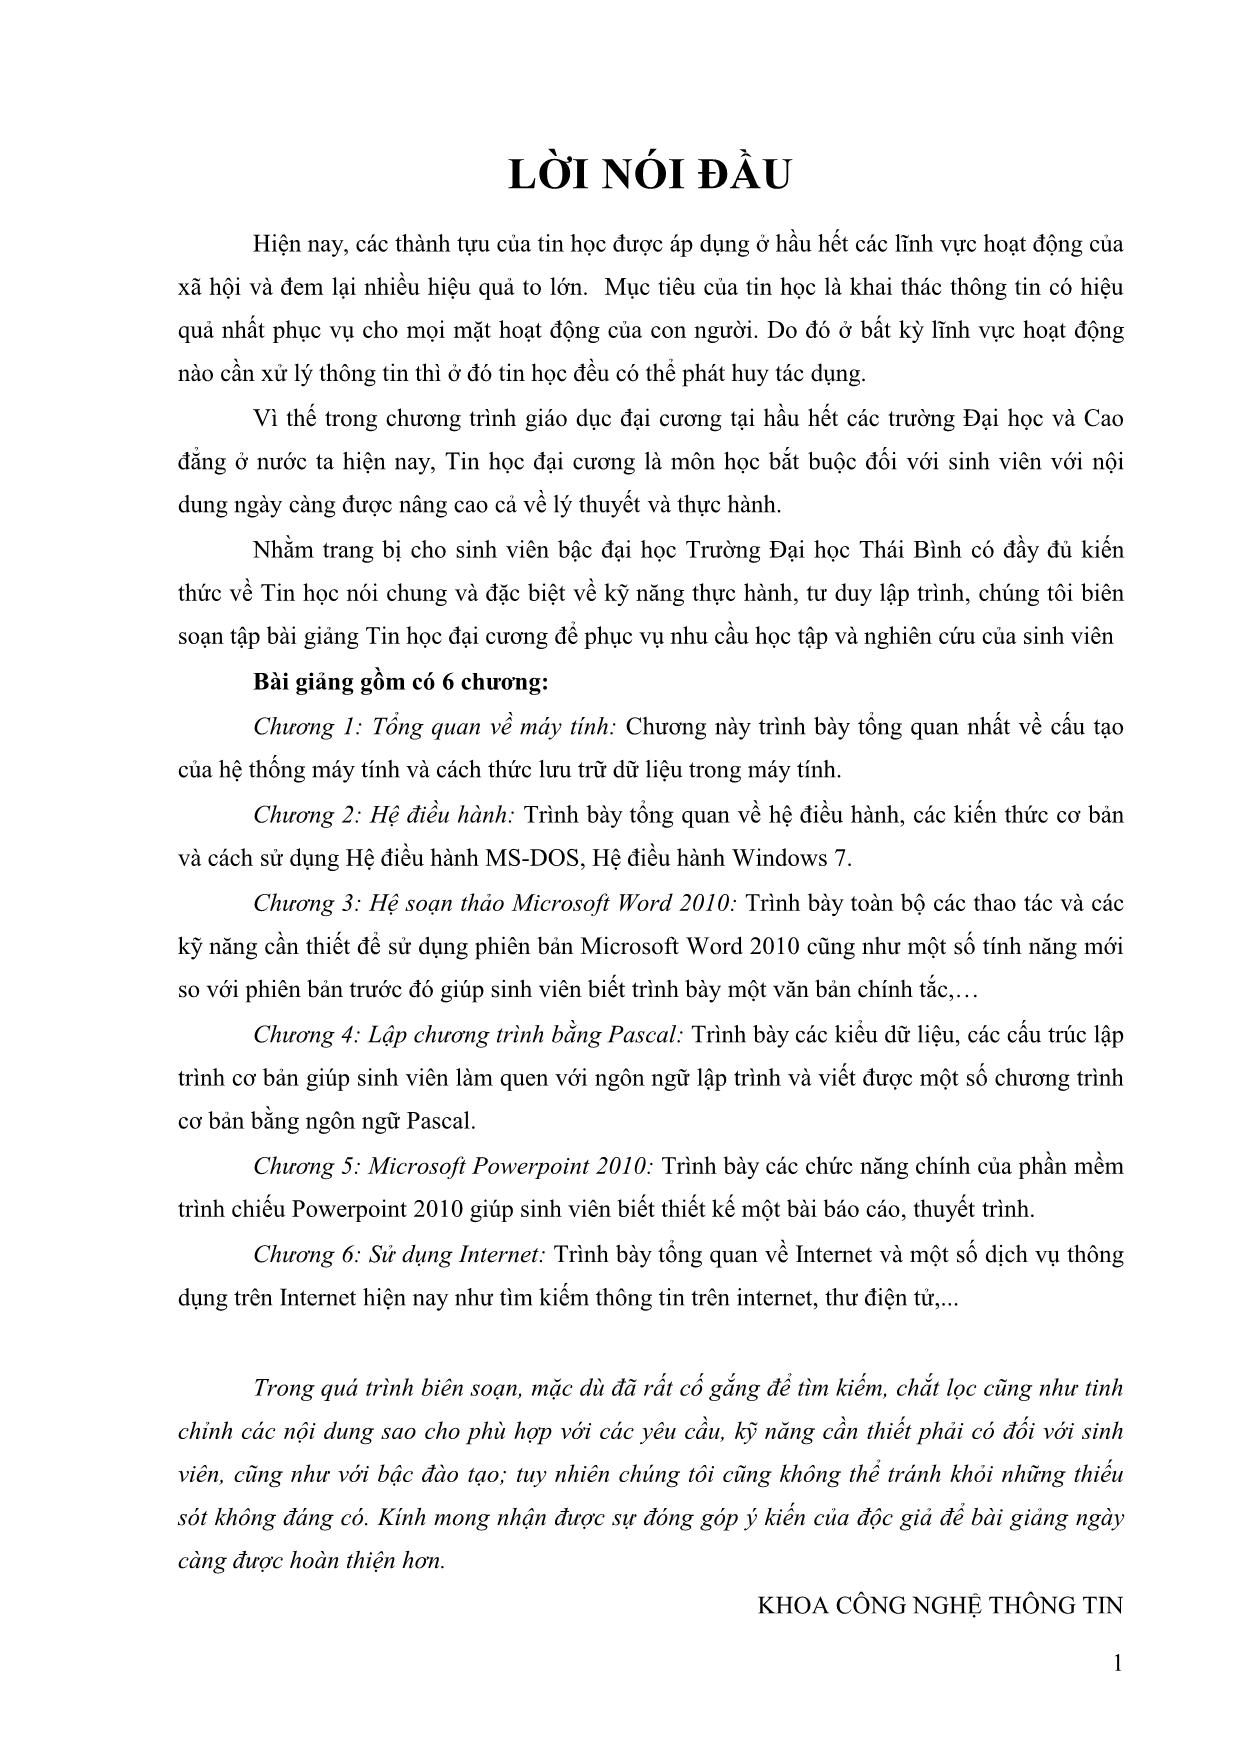 Giáo trình Tin học đại cương (Phần 1) trang 1